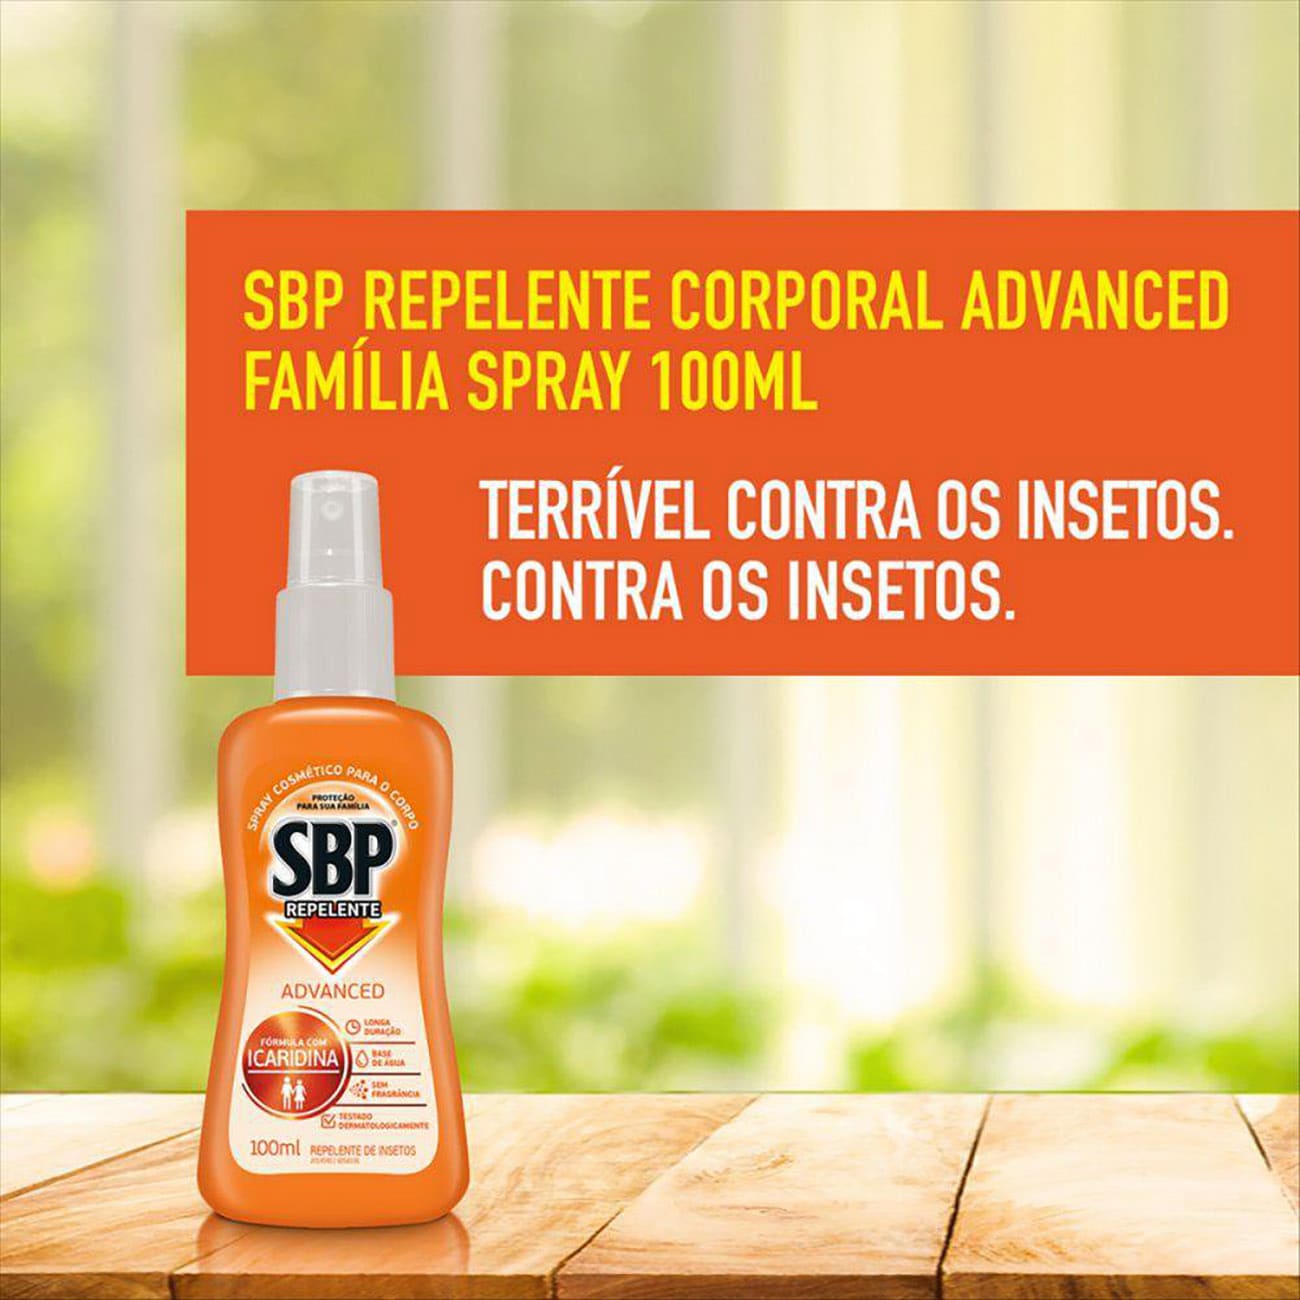 Repelente SBP Family Spray 100mL